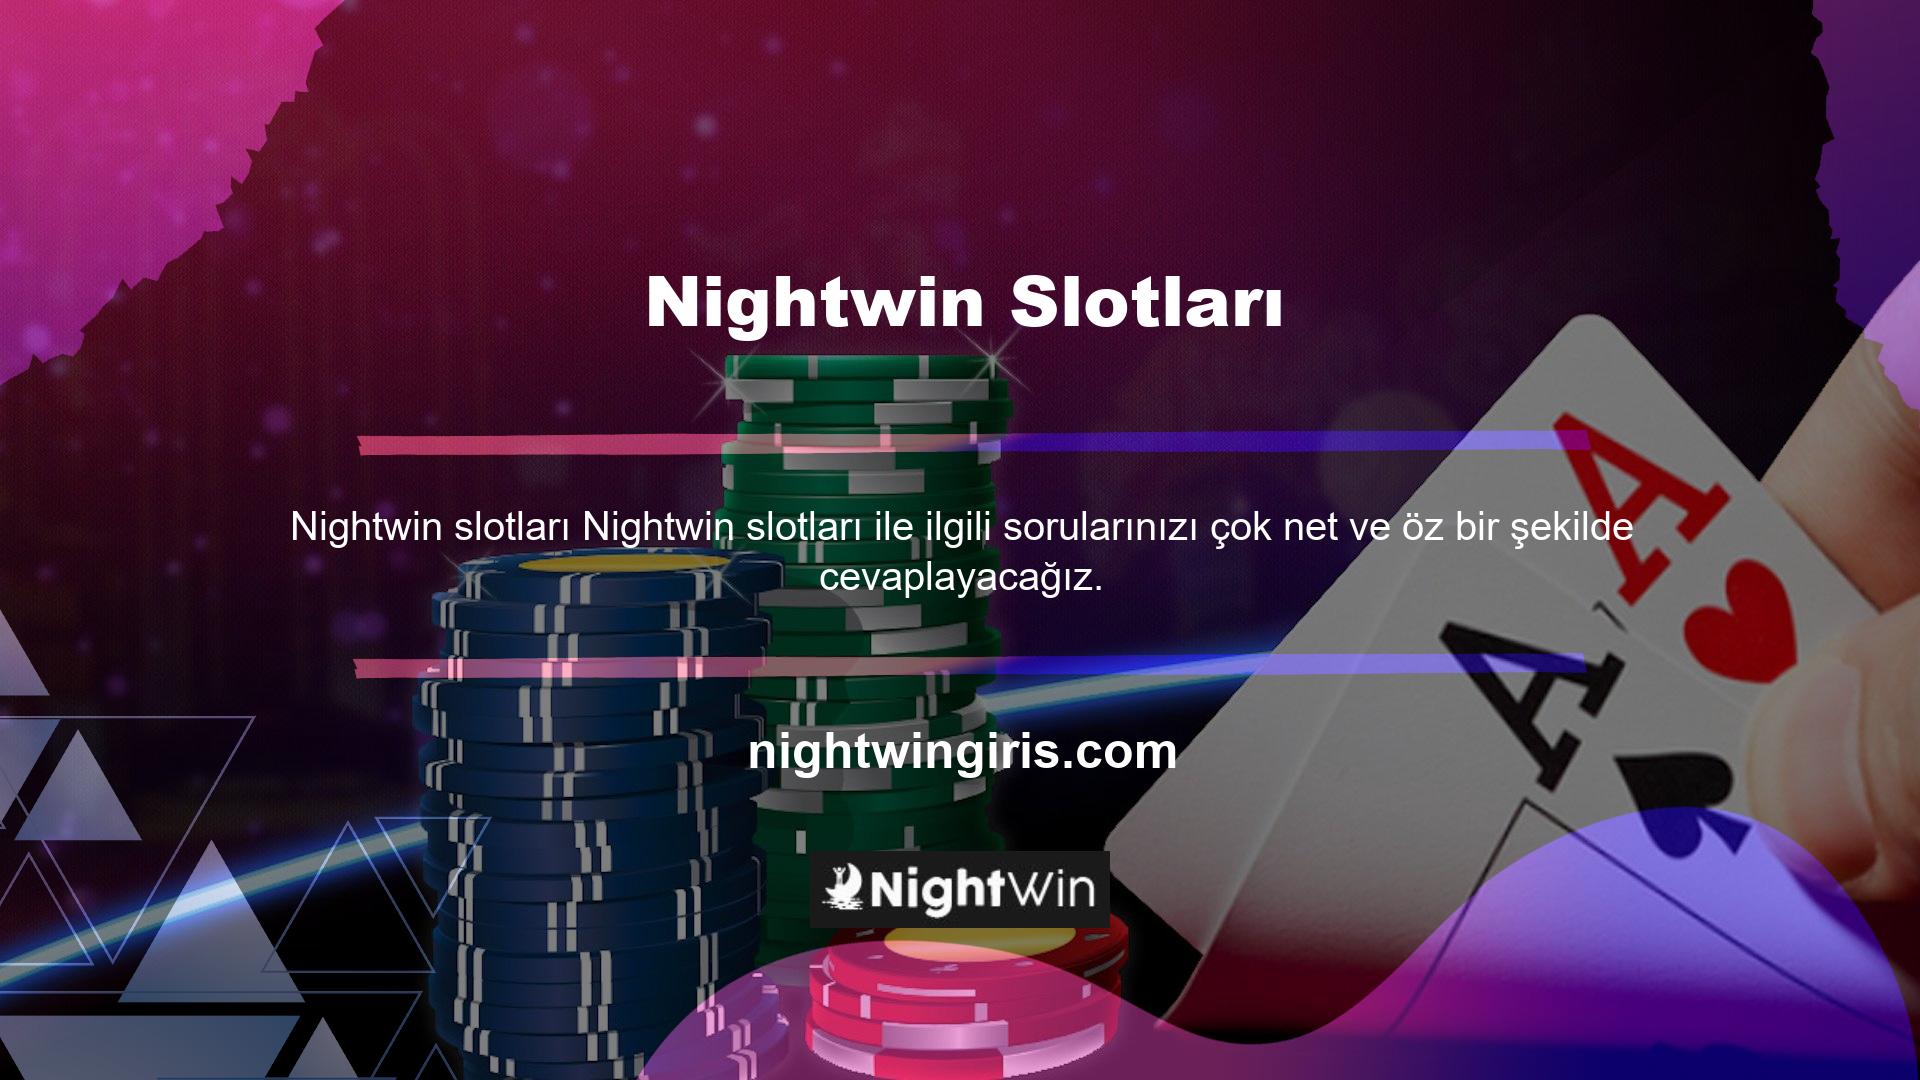 Nightwin web sitesindeki slotlarla ilgili çeşitli bilgileri görüntülemek için kullanışlıdır